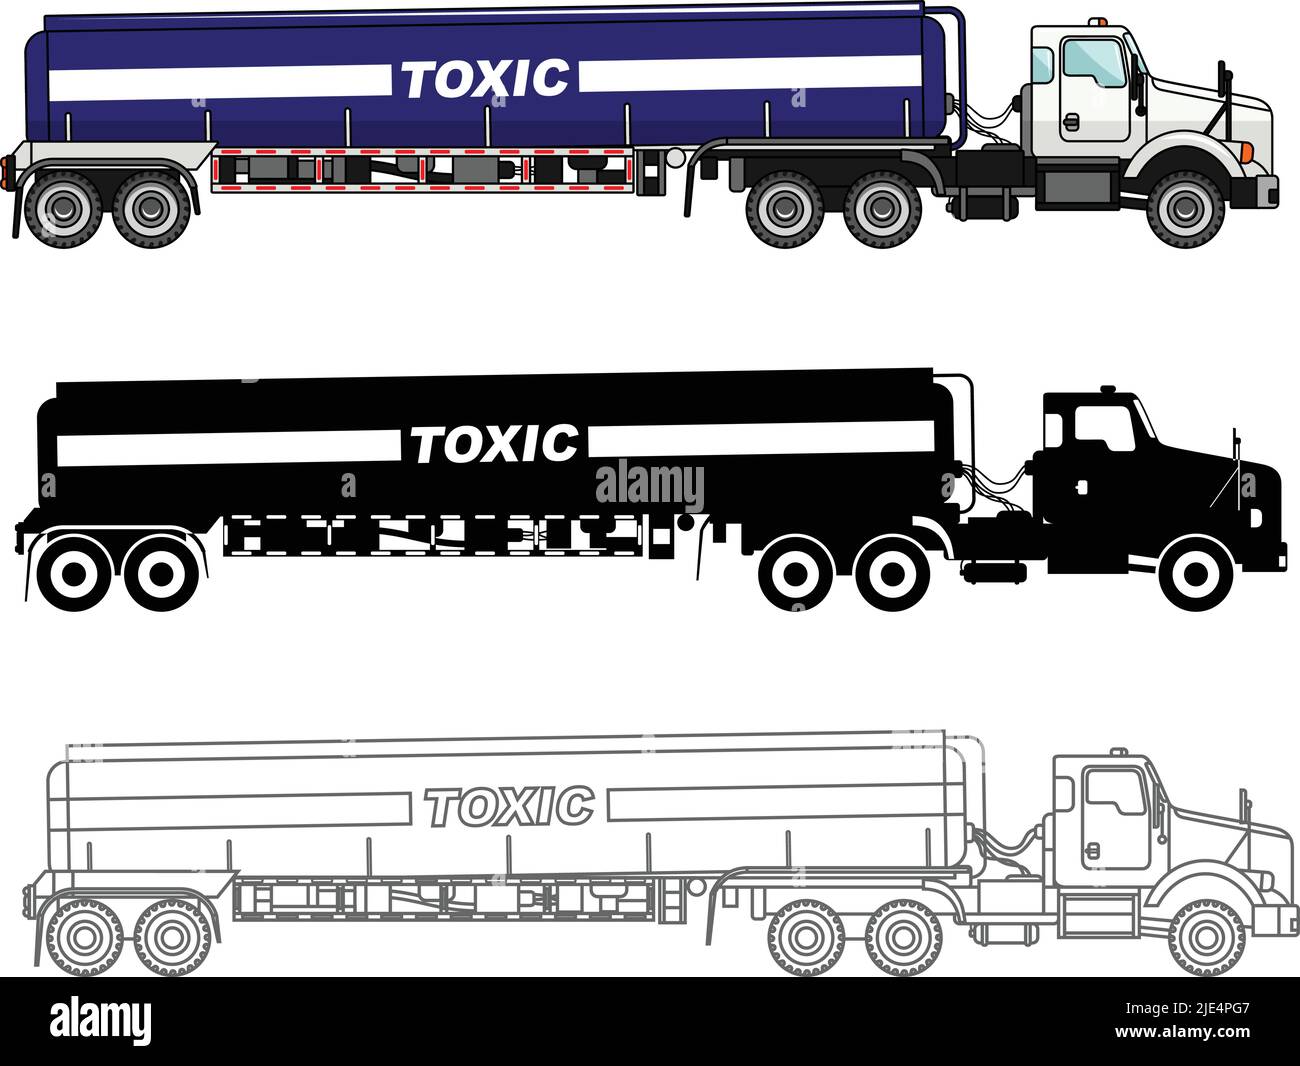 Illustrazione dettagliata dei carrelli cisterna che trasportano sostanze chimiche, radioattive, tossiche e pericolose isolate su sfondo bianco in stile piatto. Illustrazione Vettoriale